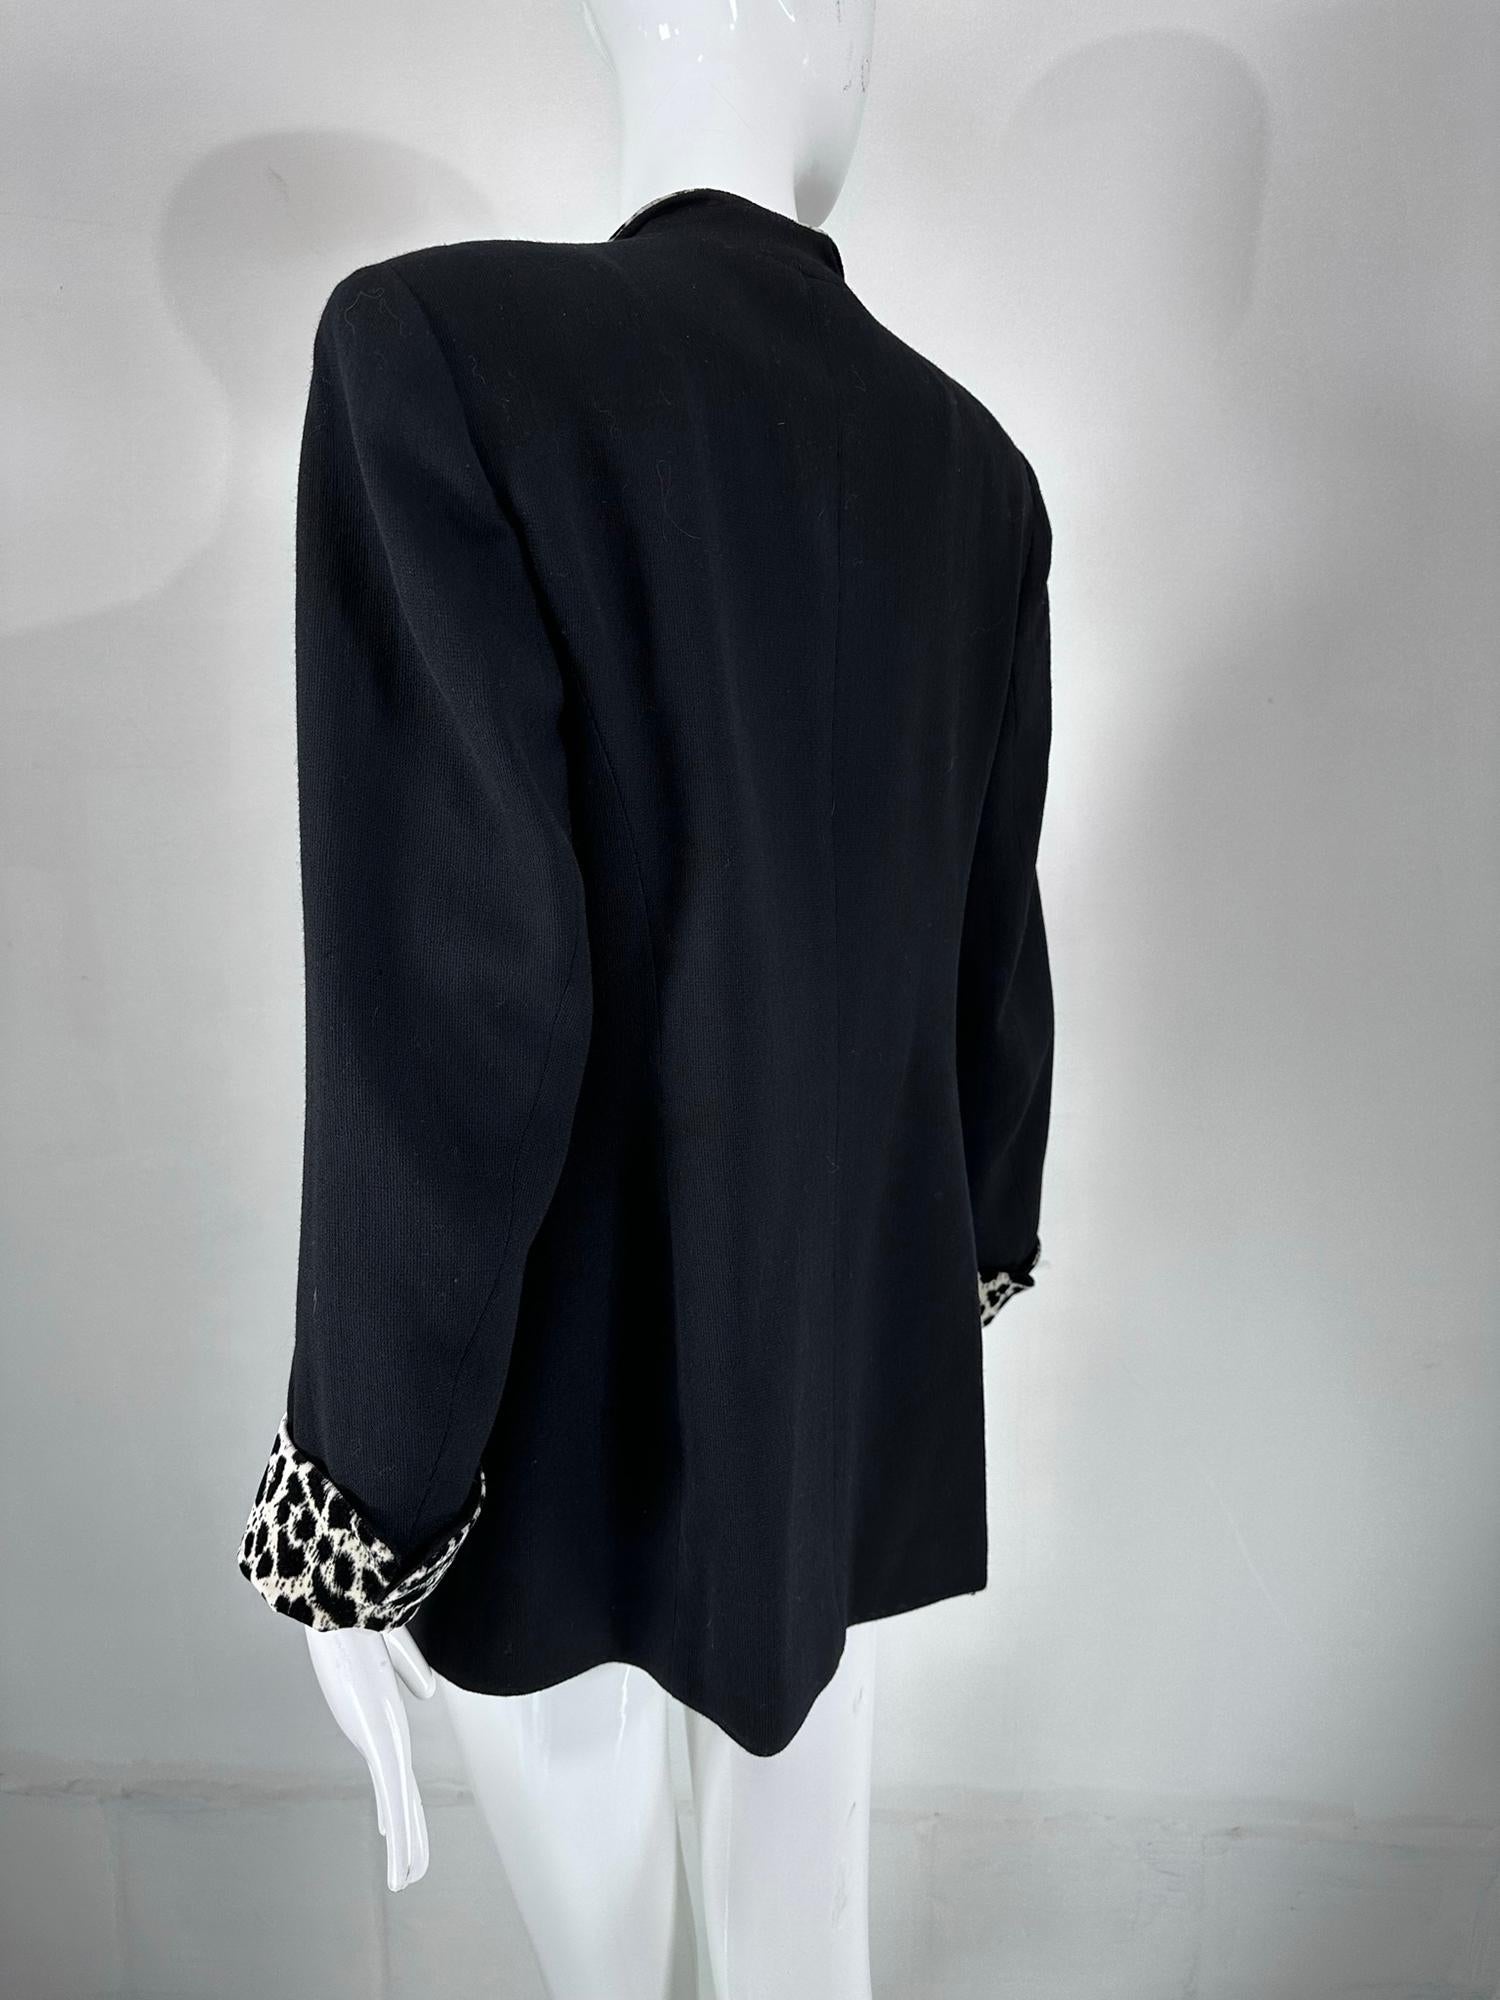 Christian Dior Black Princess Seam Tuxedo Jacket Black White Velvet Lapels 1990s For Sale 3